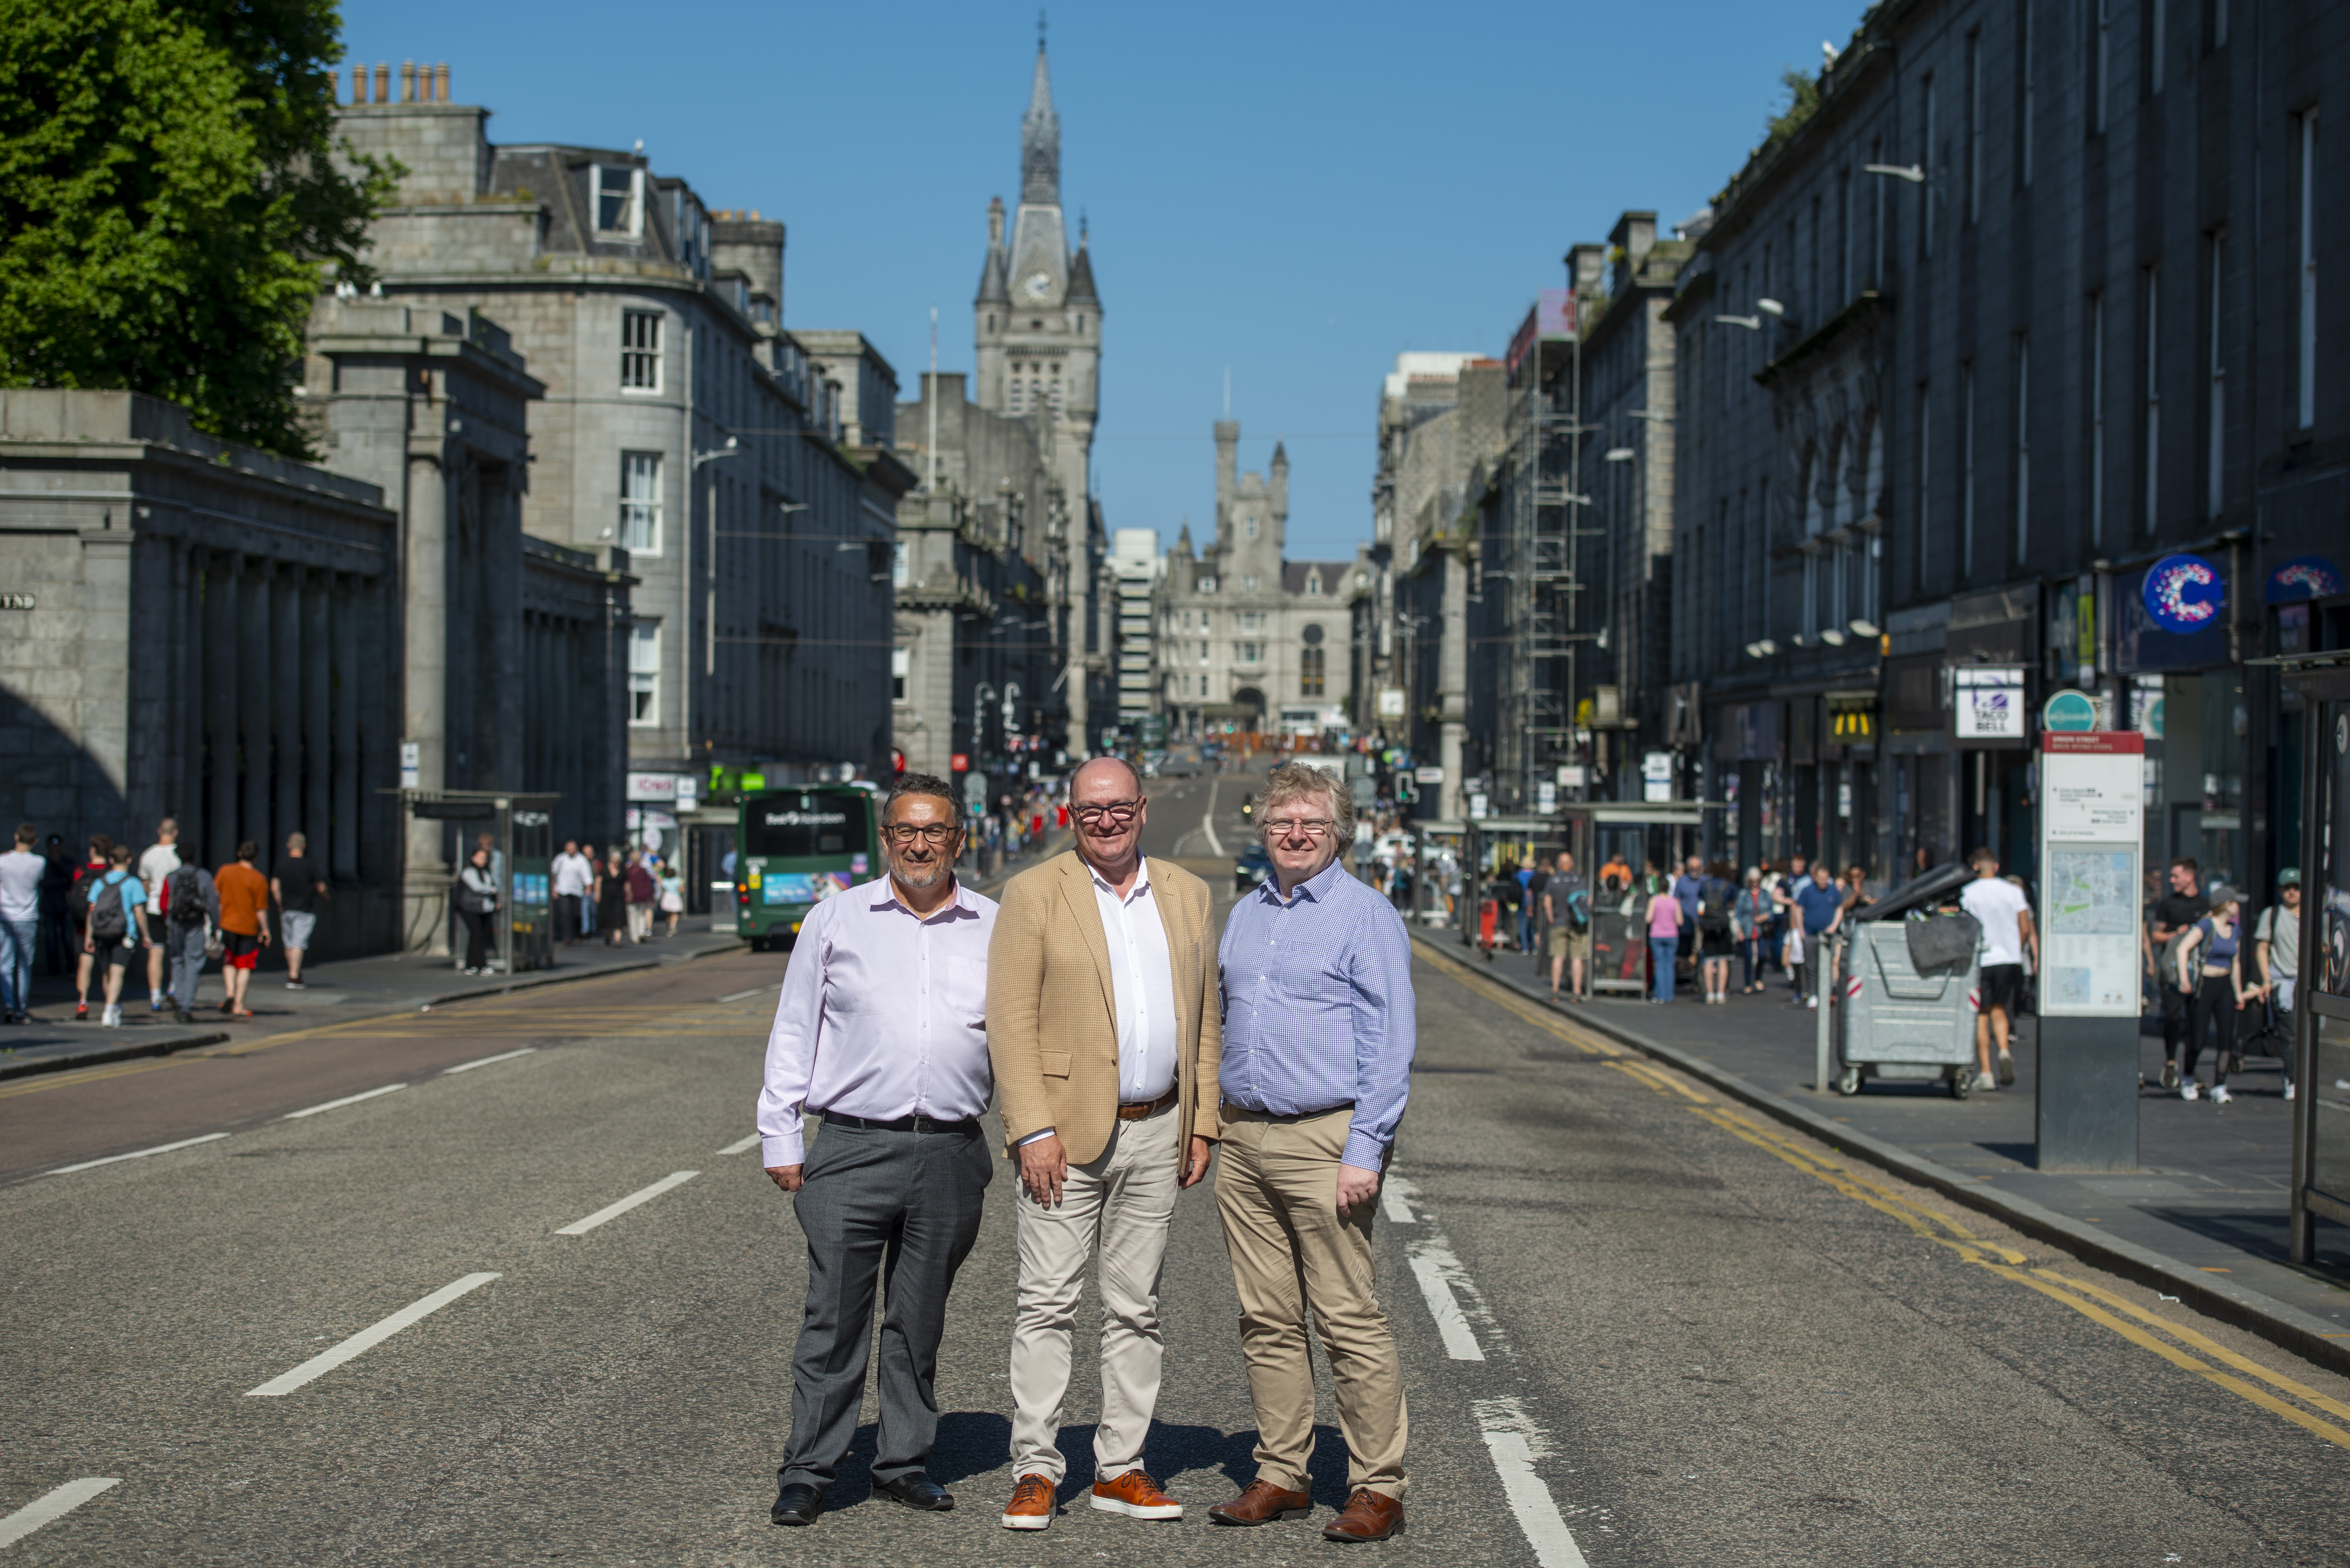 Aberdeen City Council launches £500,000 scheme for Union Street regeneration